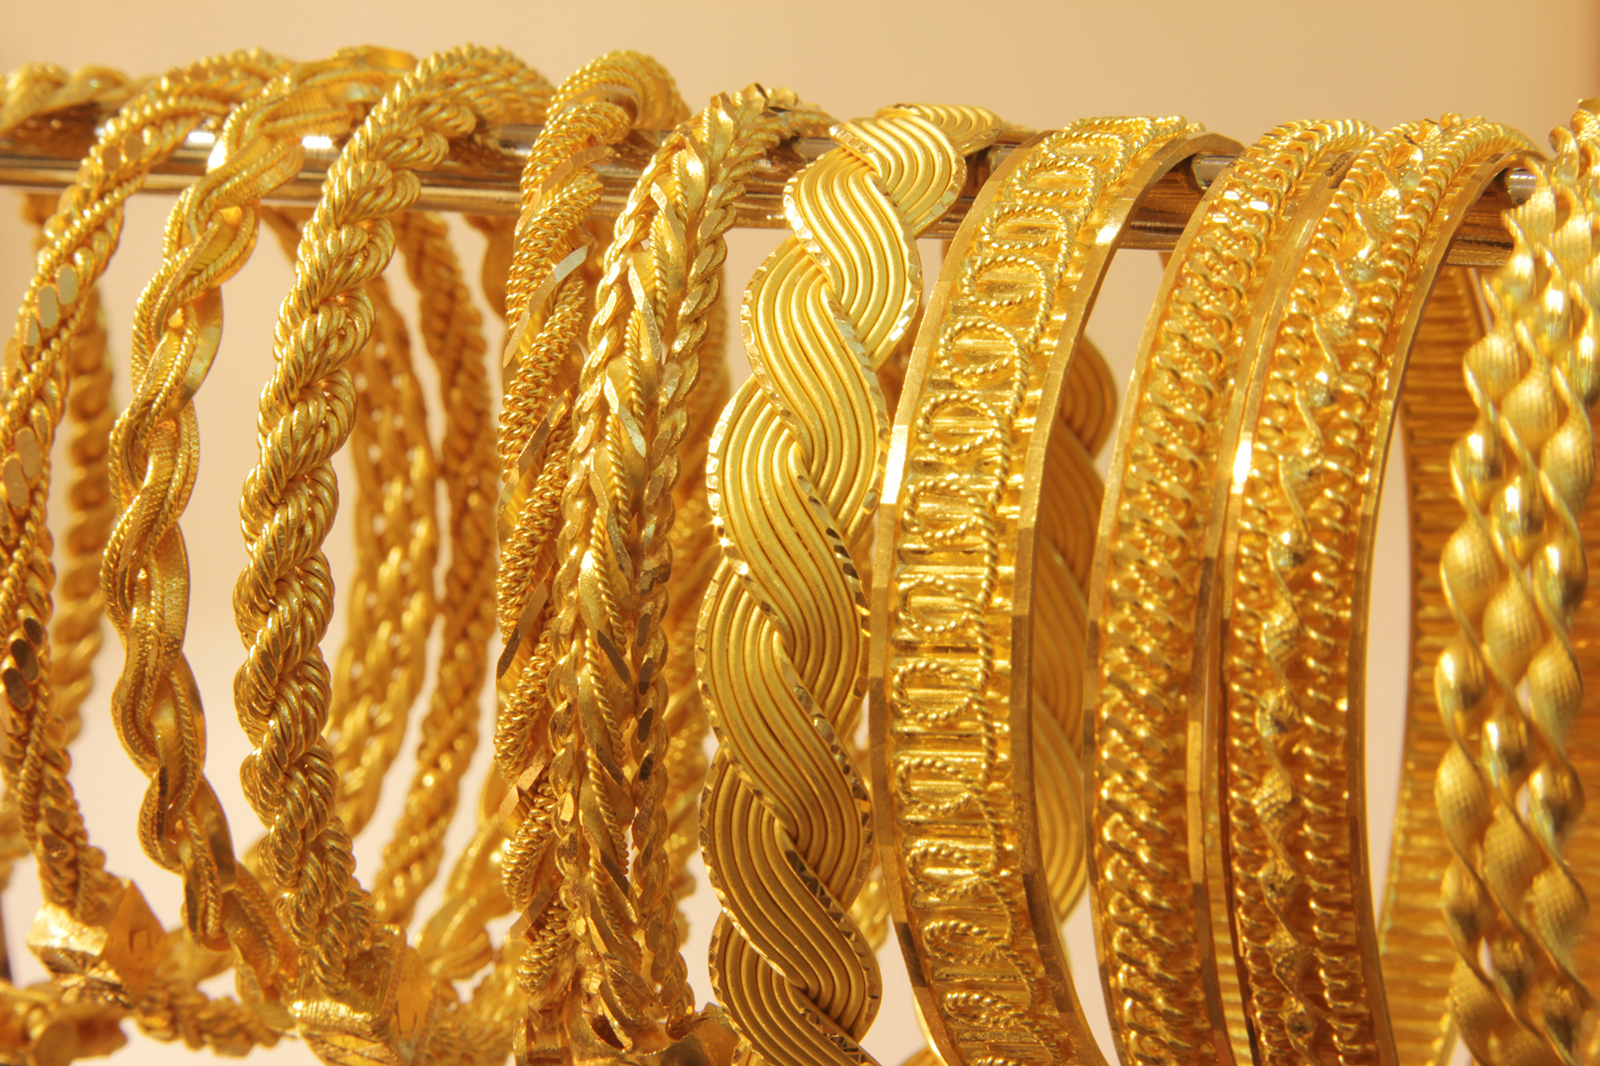 Новое про золото. Дубайское золото браслеты. Голд. Золотистые браслеты без фона. Широкие золотые браслеты в персидском стиле.